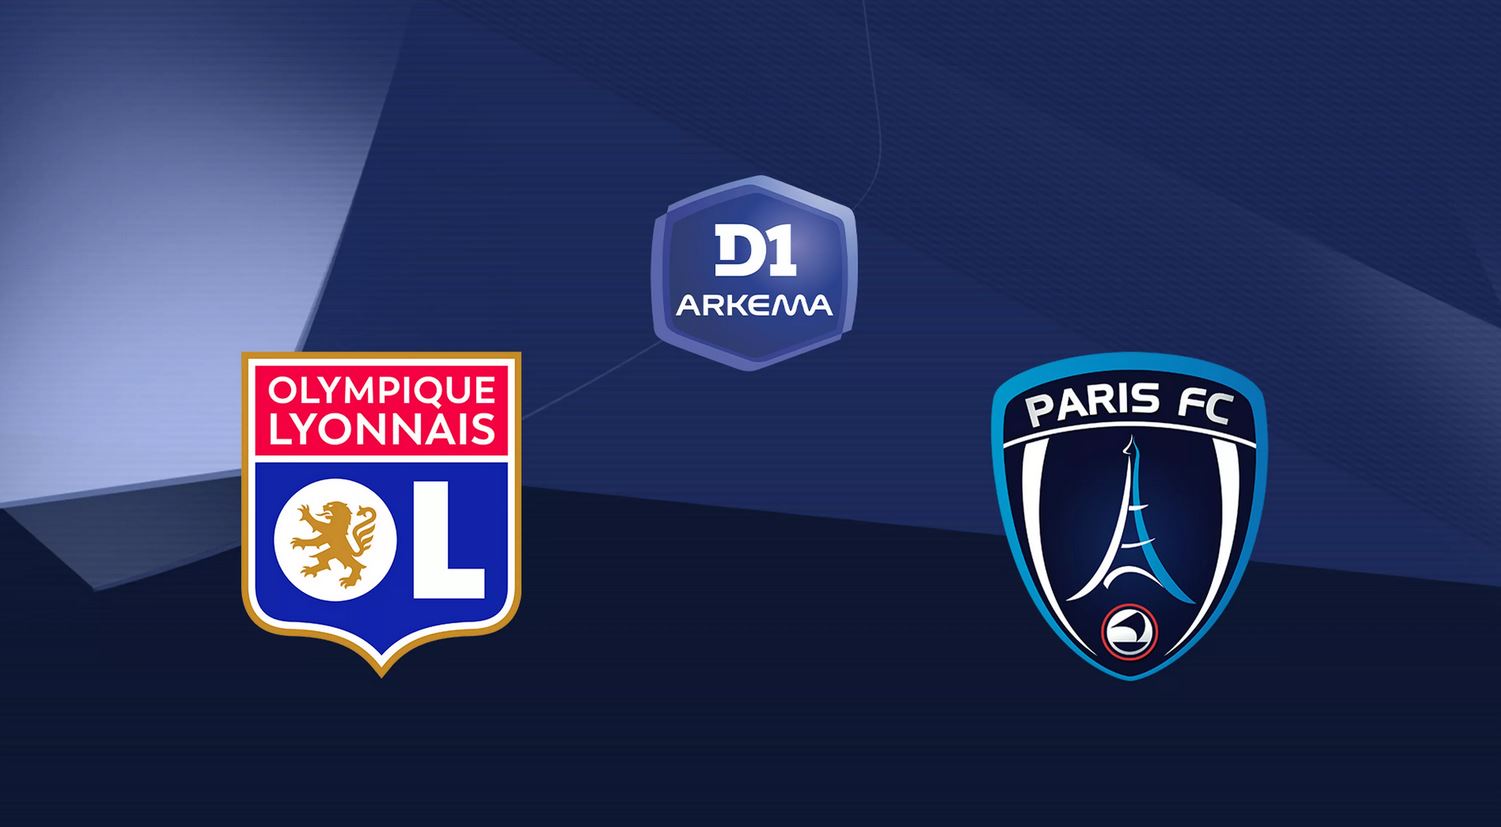 Lyon / Paris FC (TV/Streaming) Sur quelles chaînes et à quelle heure voir le match de D1 Arkéma ?